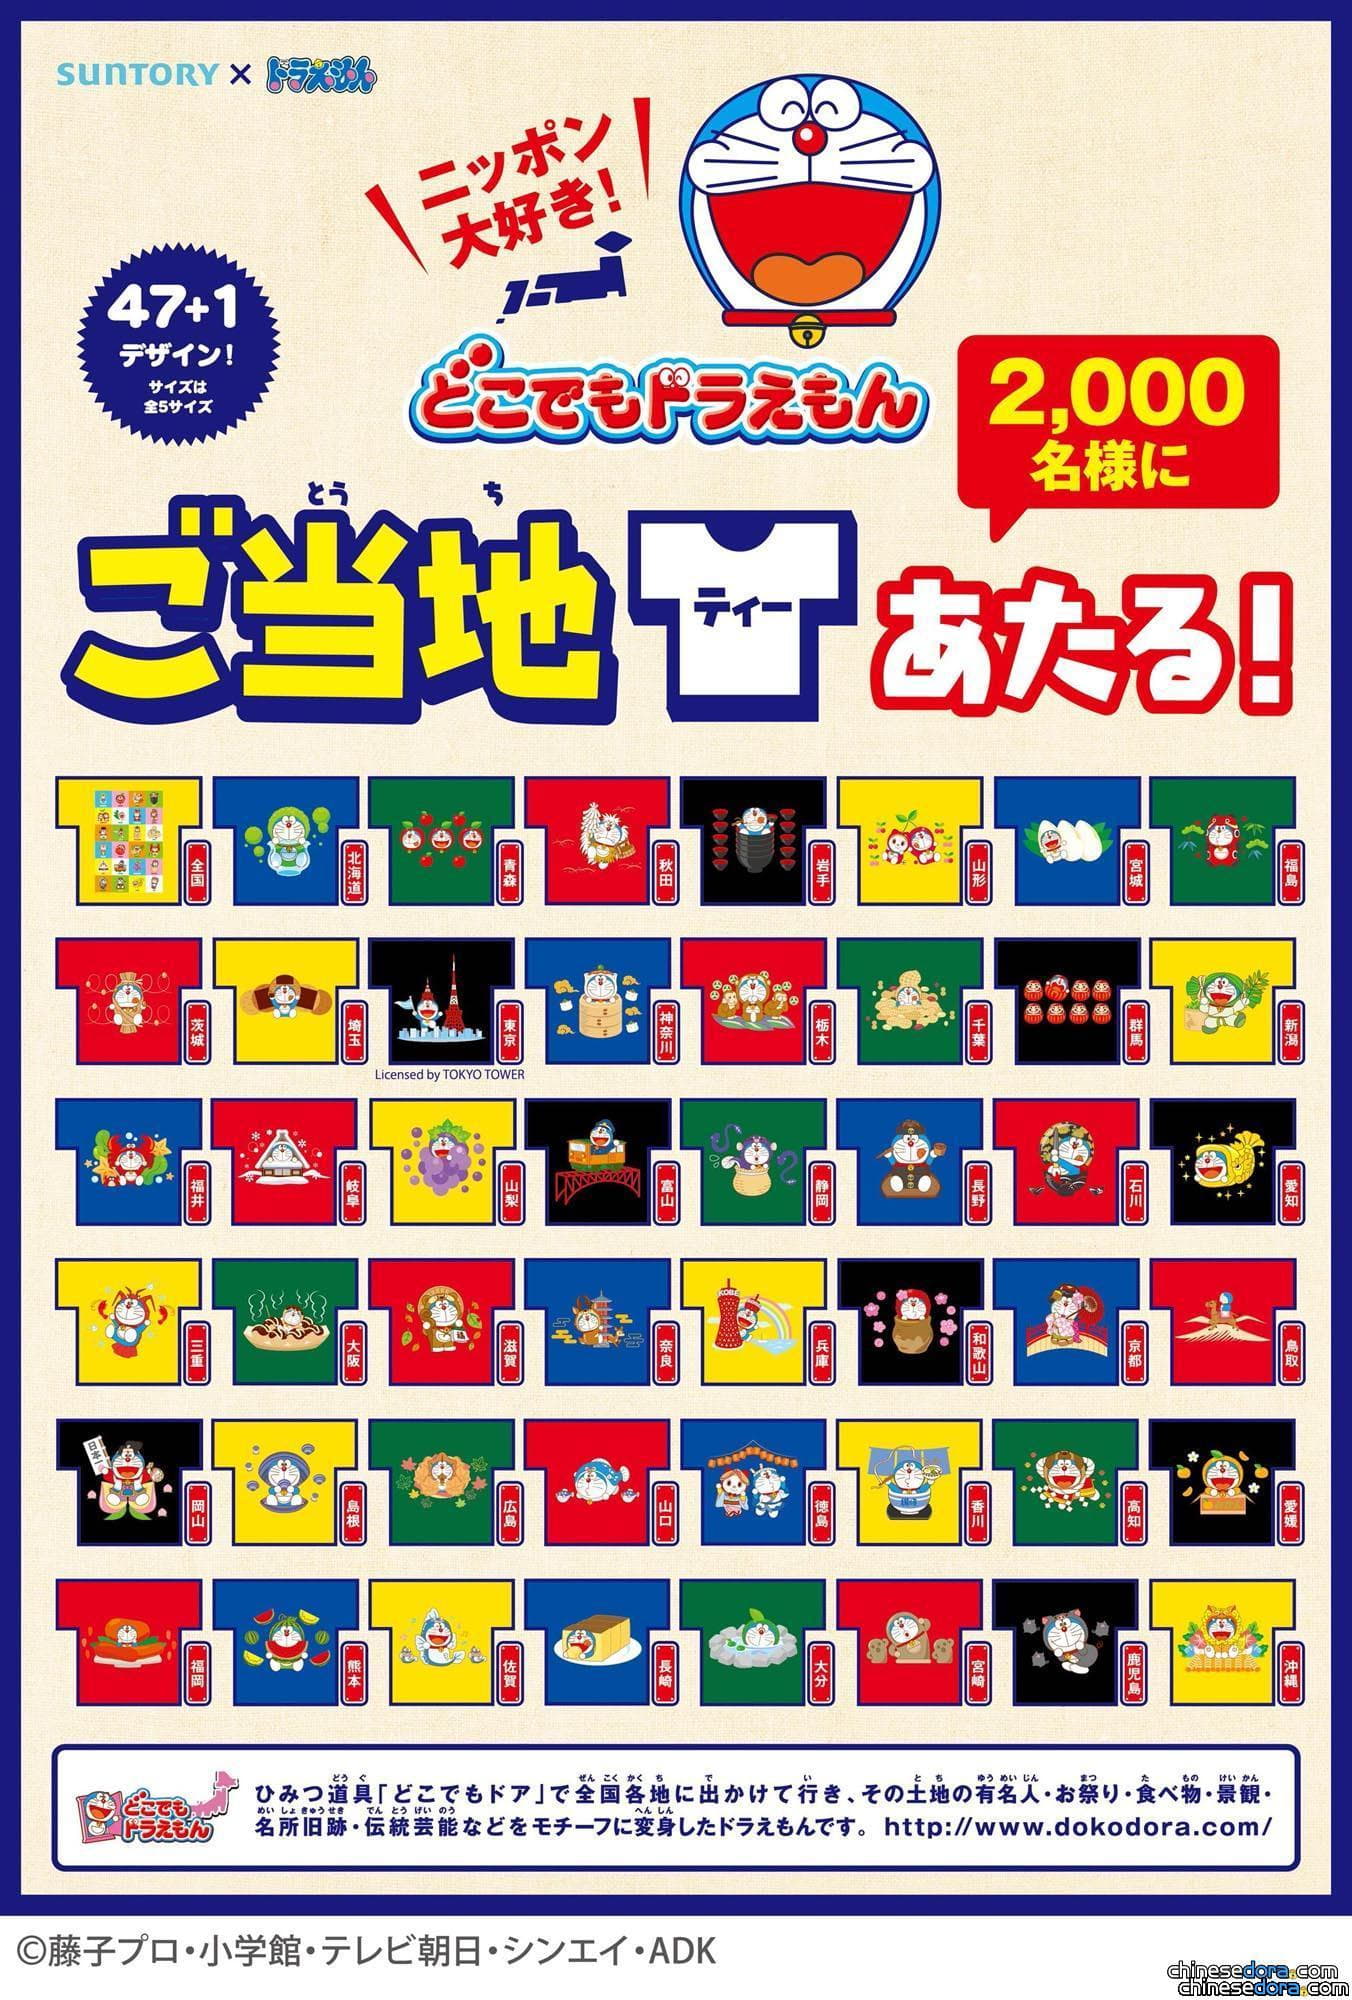 [日本] 地方特色與哆啦A夢結合! 買飲料送「到處都是哆啦A夢T恤」